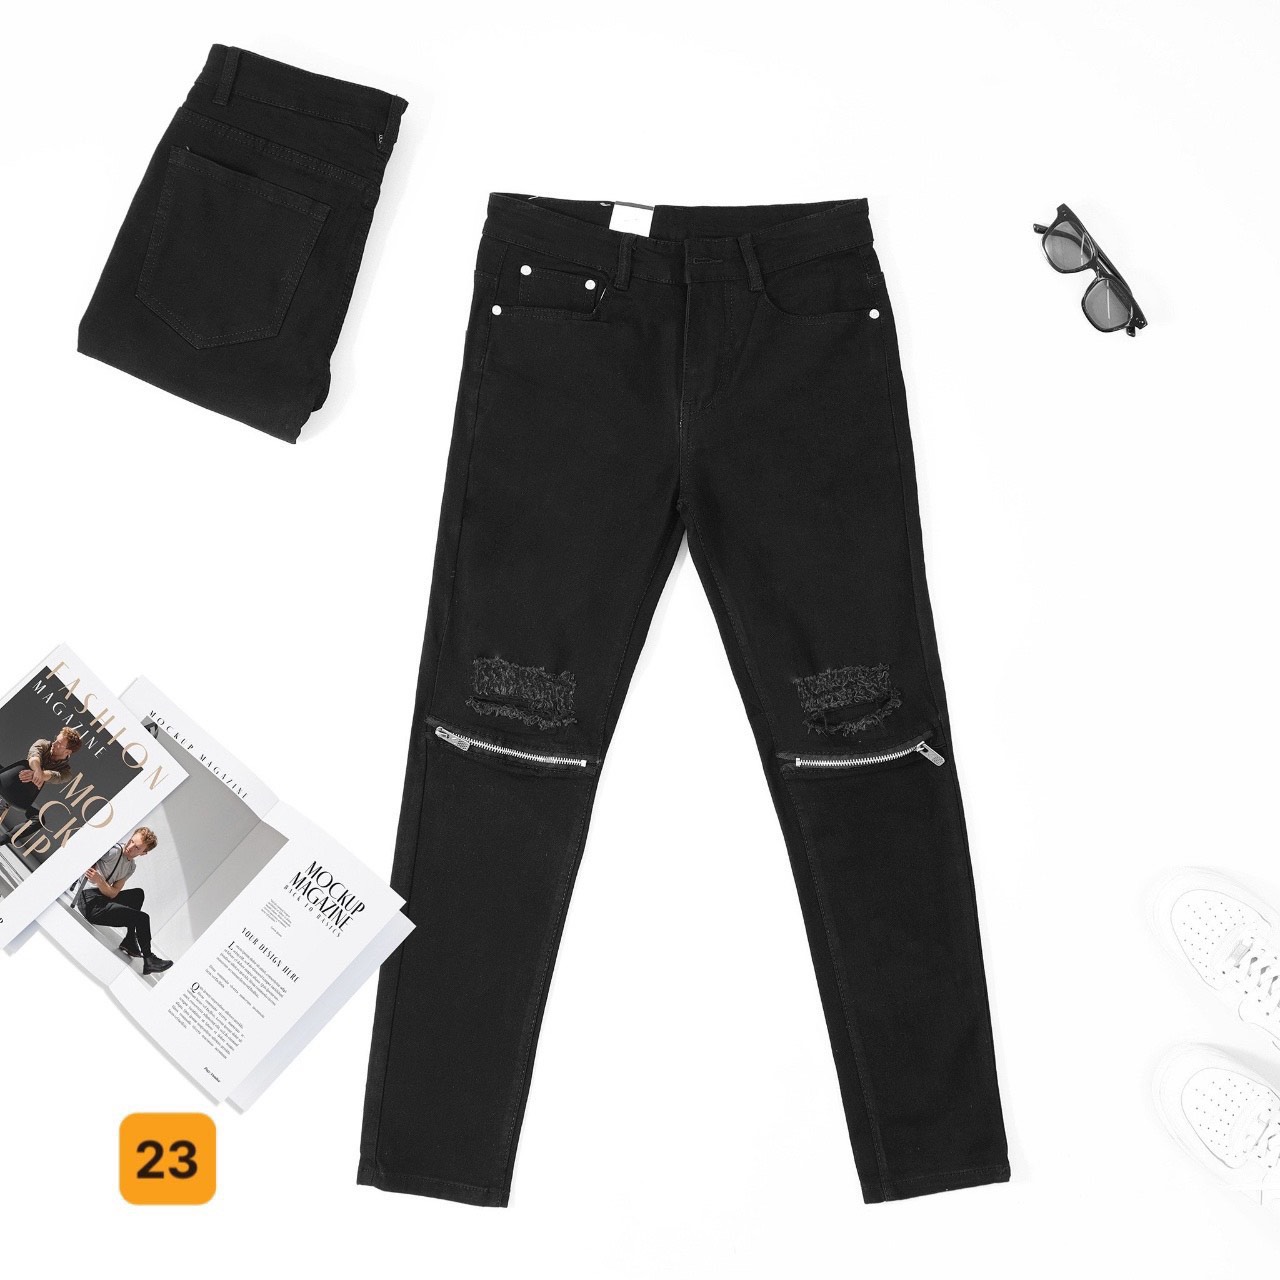 Quần jean nam, quần bò nam co dãn nhẹ, phối họa tiết thời trang cao cấp Julido Store, mẫu mới MS23